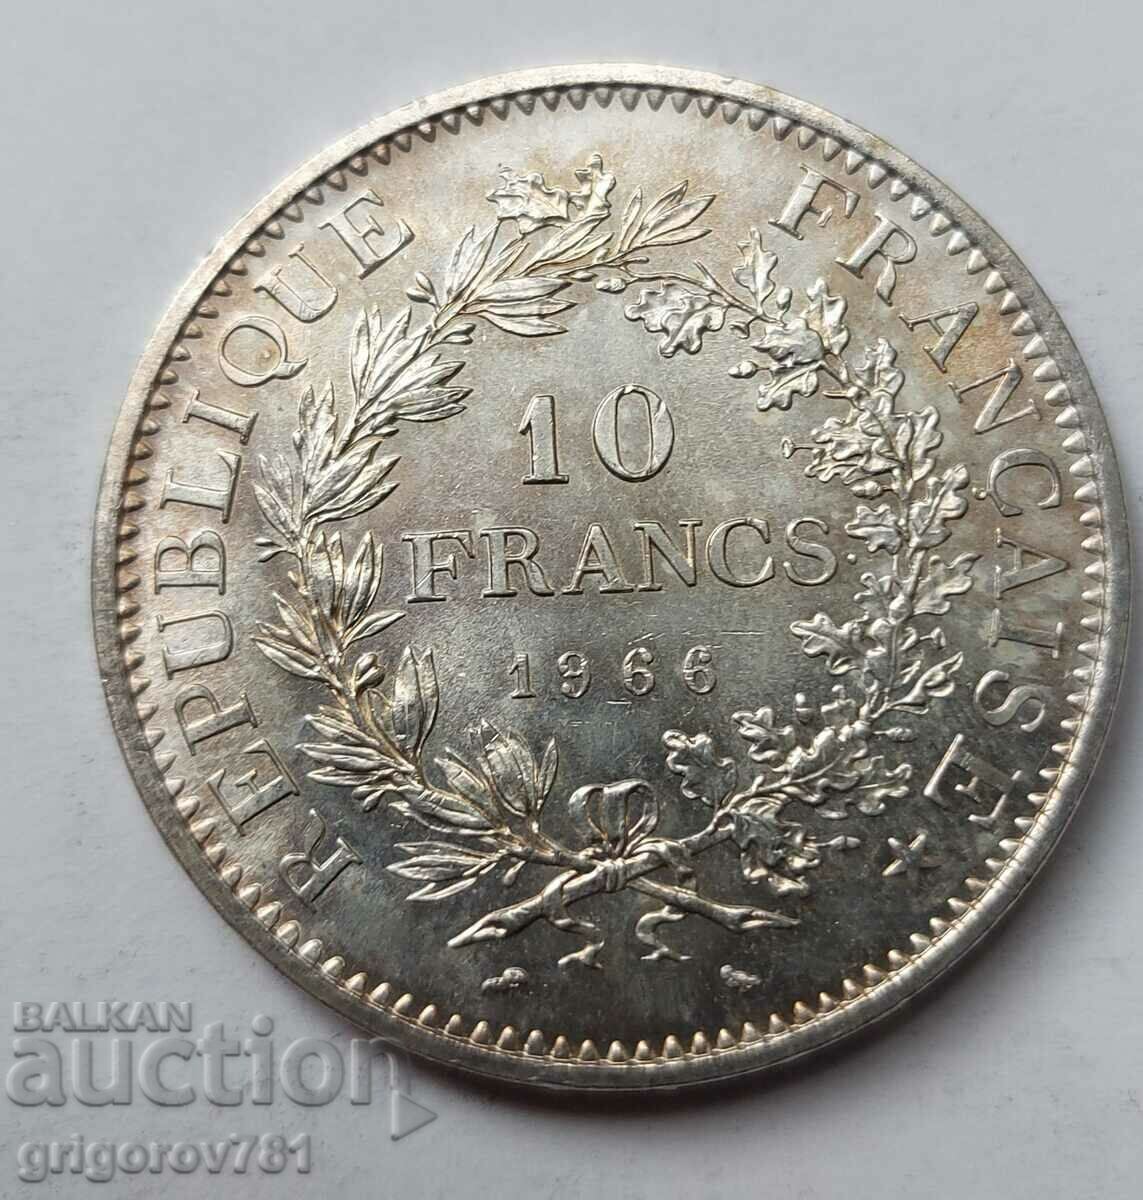 10 Franci Argint Franta 1966 - Moneda de argint #65